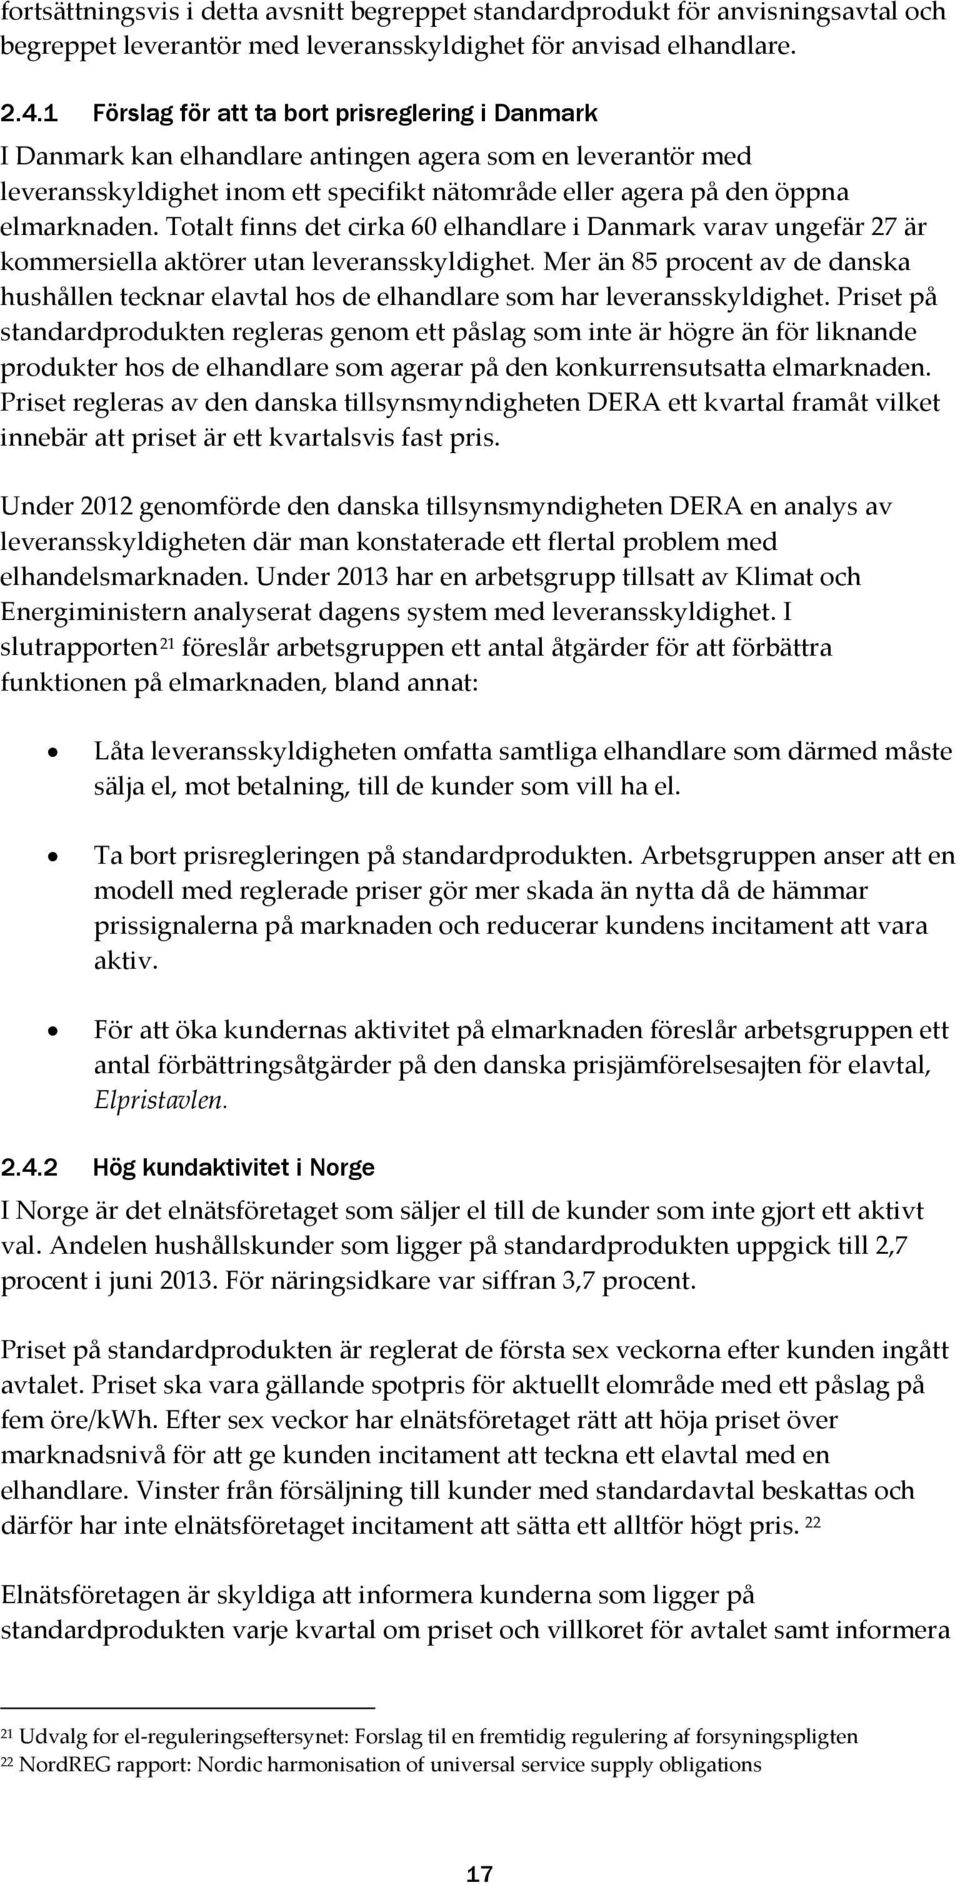 Totalt finns det cirka 60 elhandlare i Danmark varav ungefär 27 är kommersiella aktörer utan leveransskyldighet.